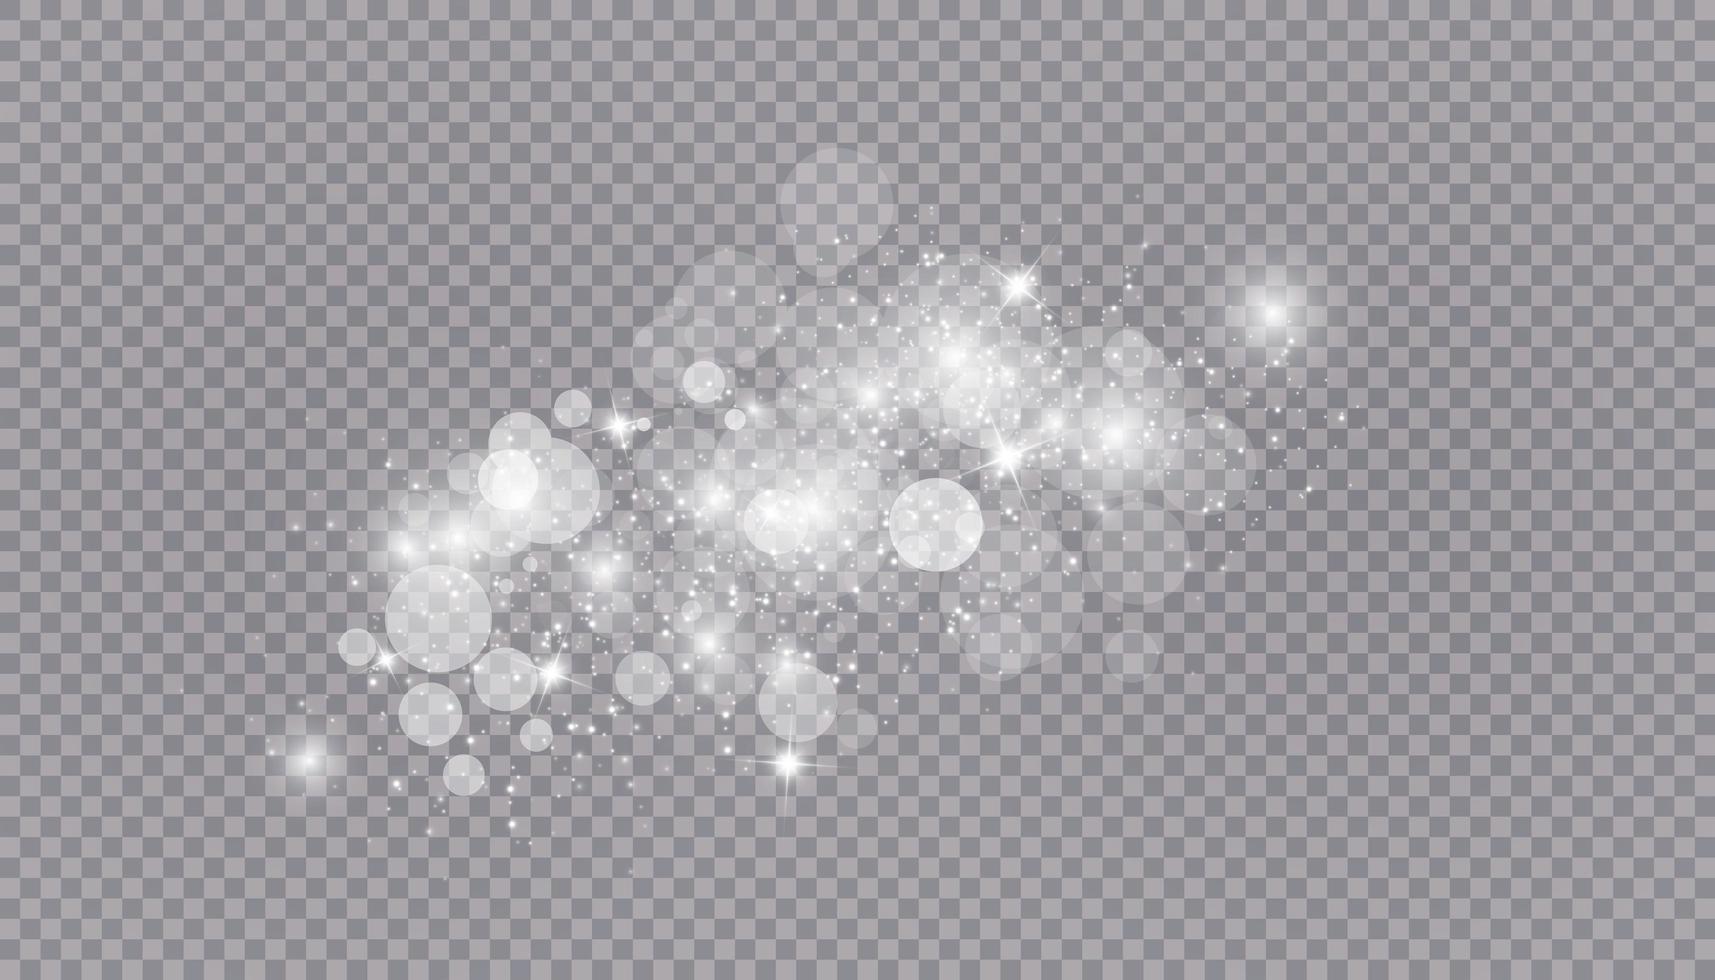 efeito de luz brilhante com muitas partículas de glitter isoladas vetor